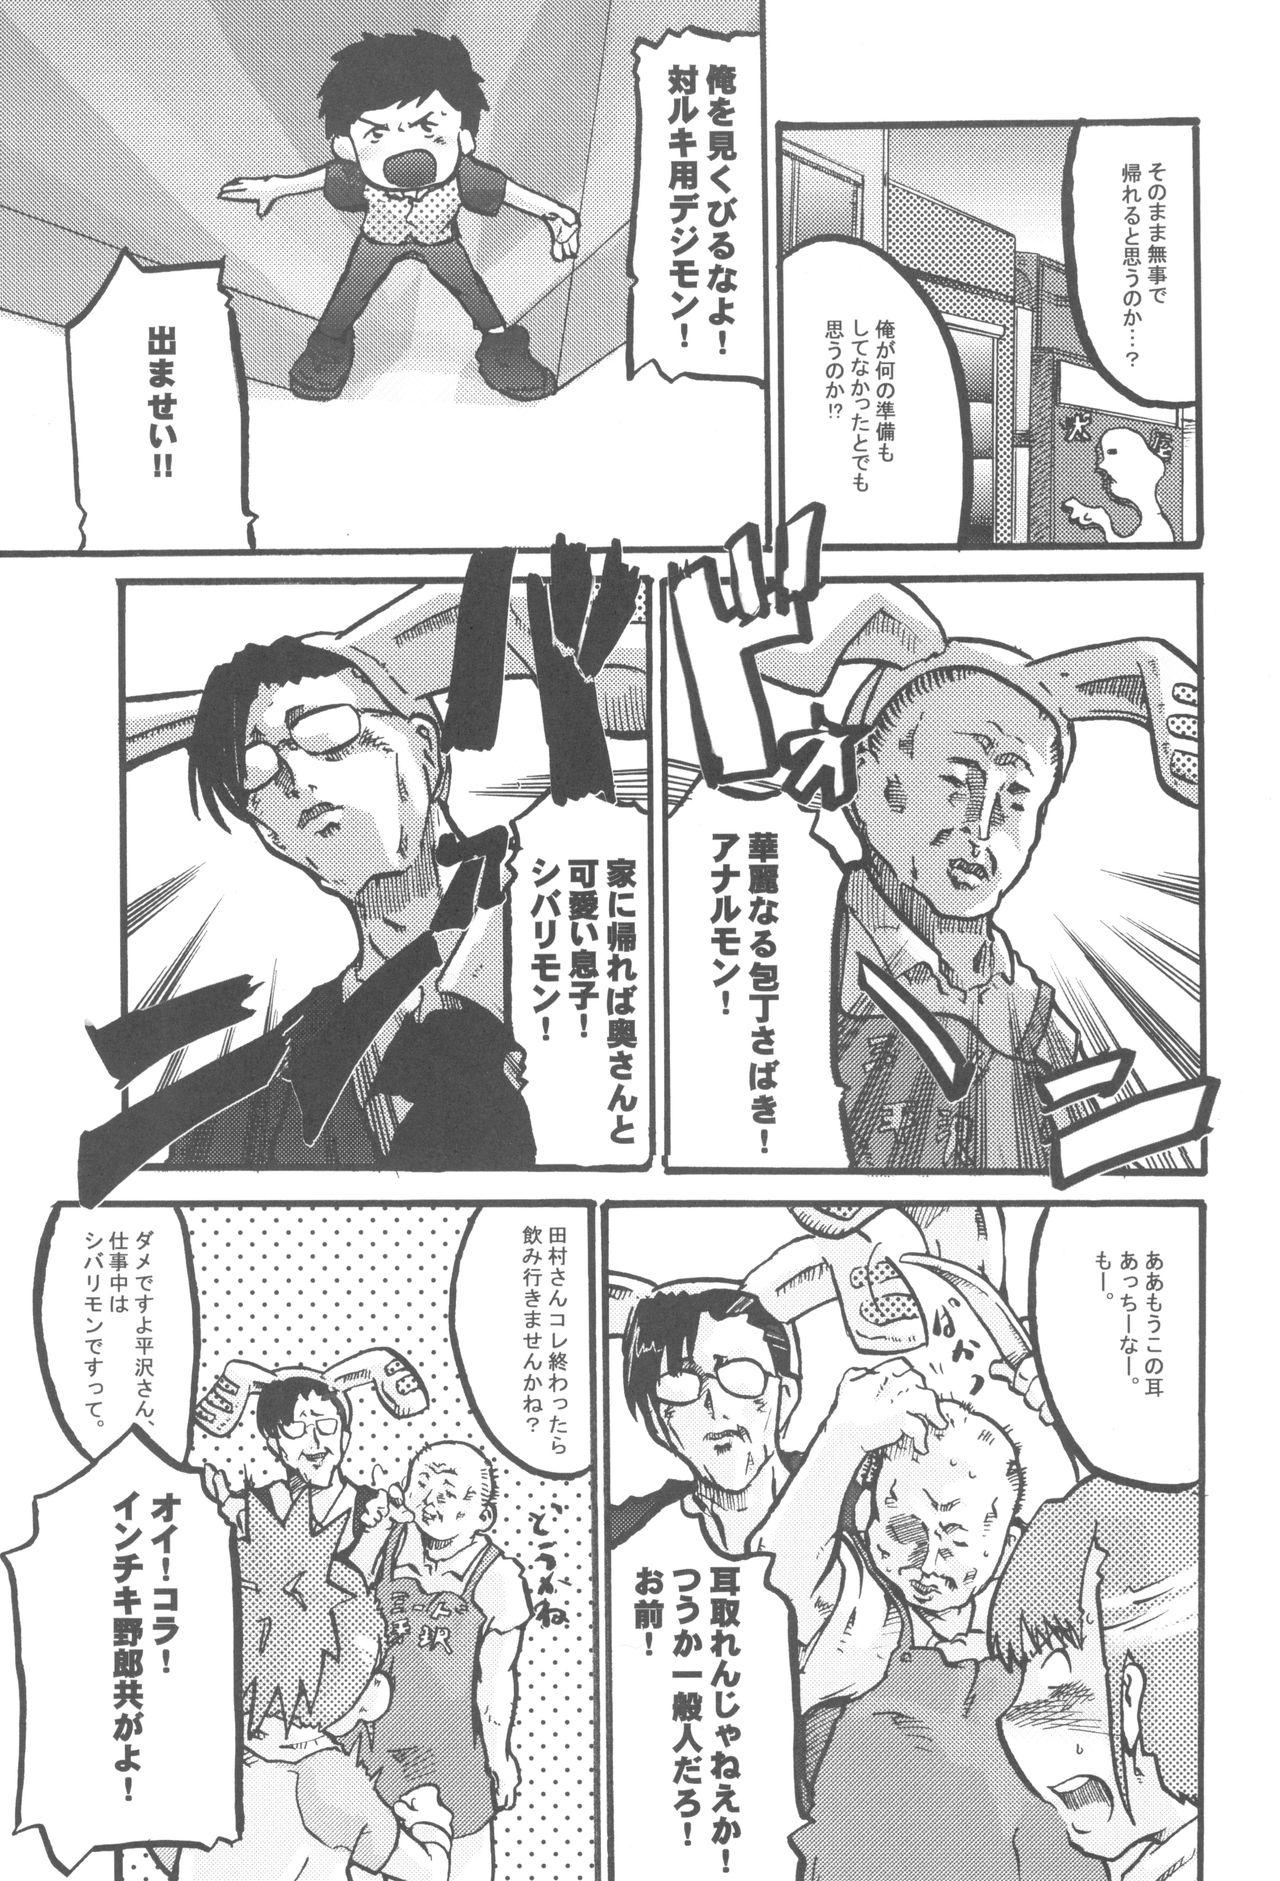 Art Atama no Warui Hon. - Digimon tamers Colegiala - Page 5